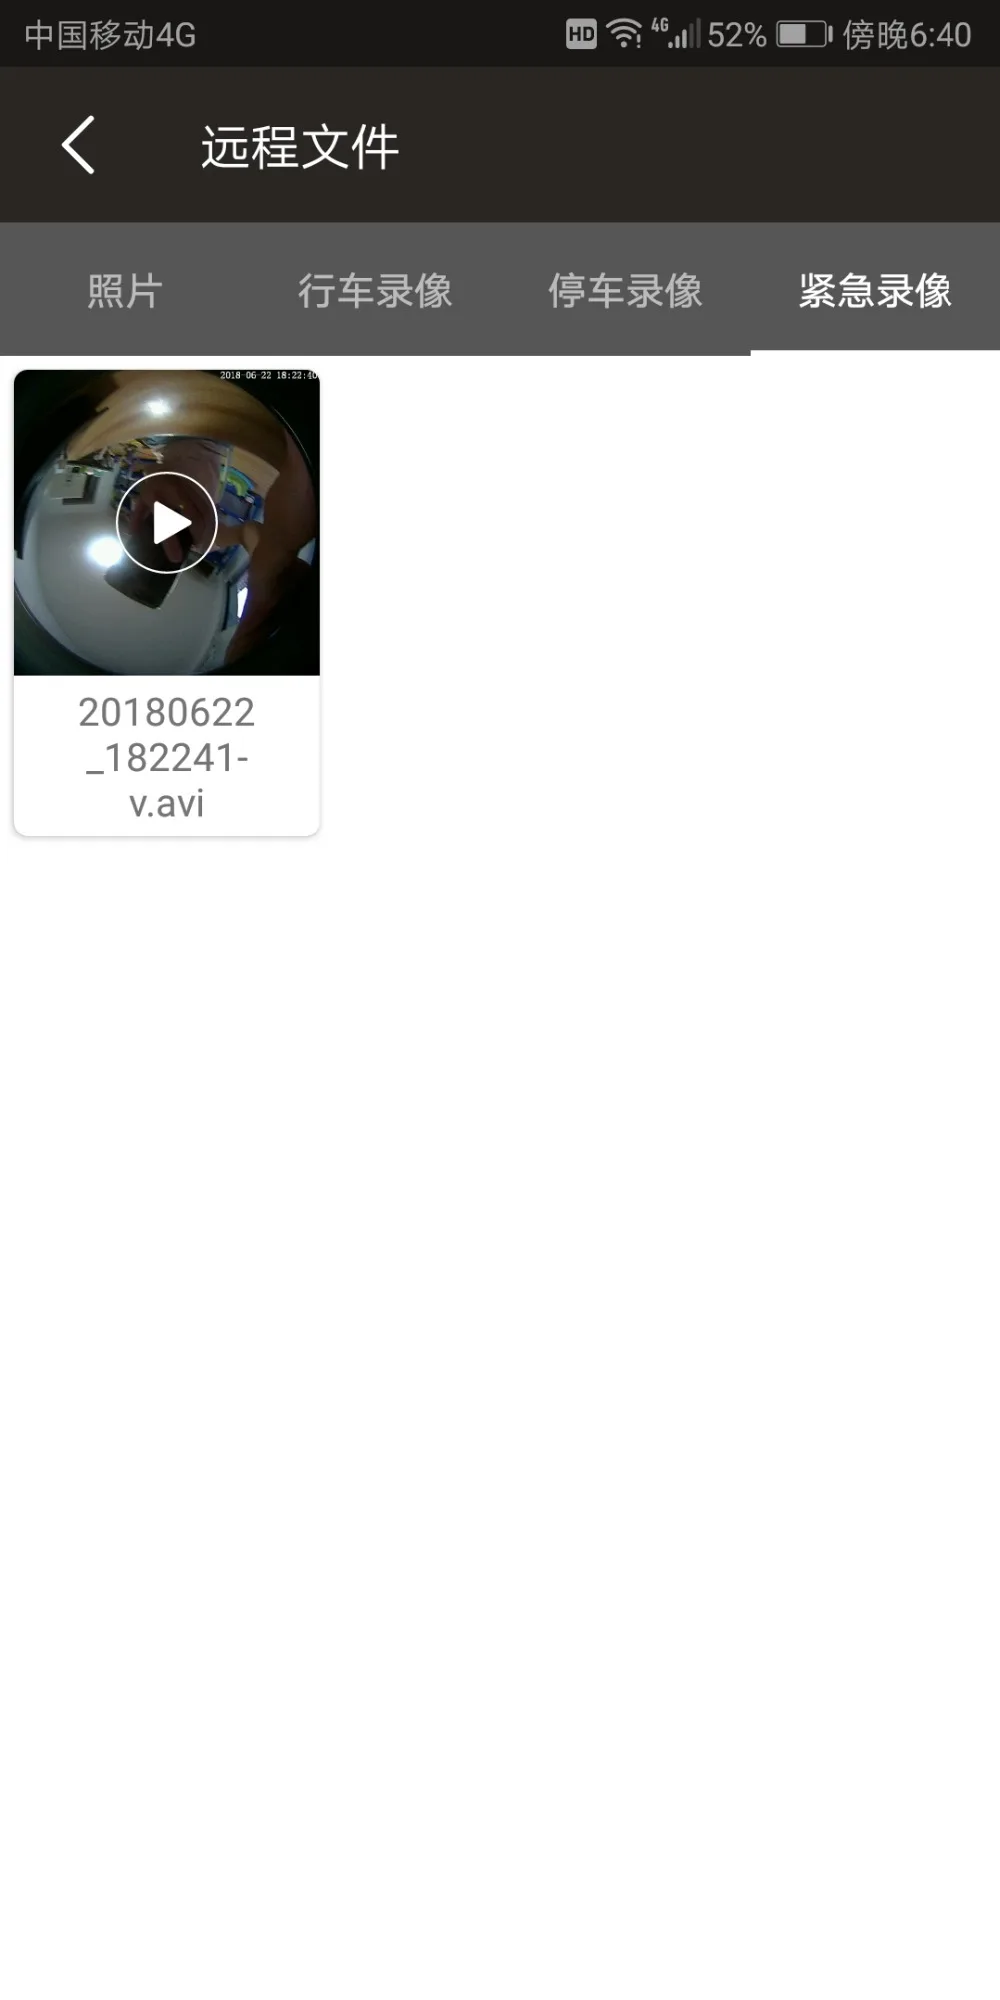 360 градусов объемный вид Starlight Ночное Видение G Датчик парковки монитор wifi видео рекордер Автомобильный видеорегистратор Камера приложение для Android/IOS